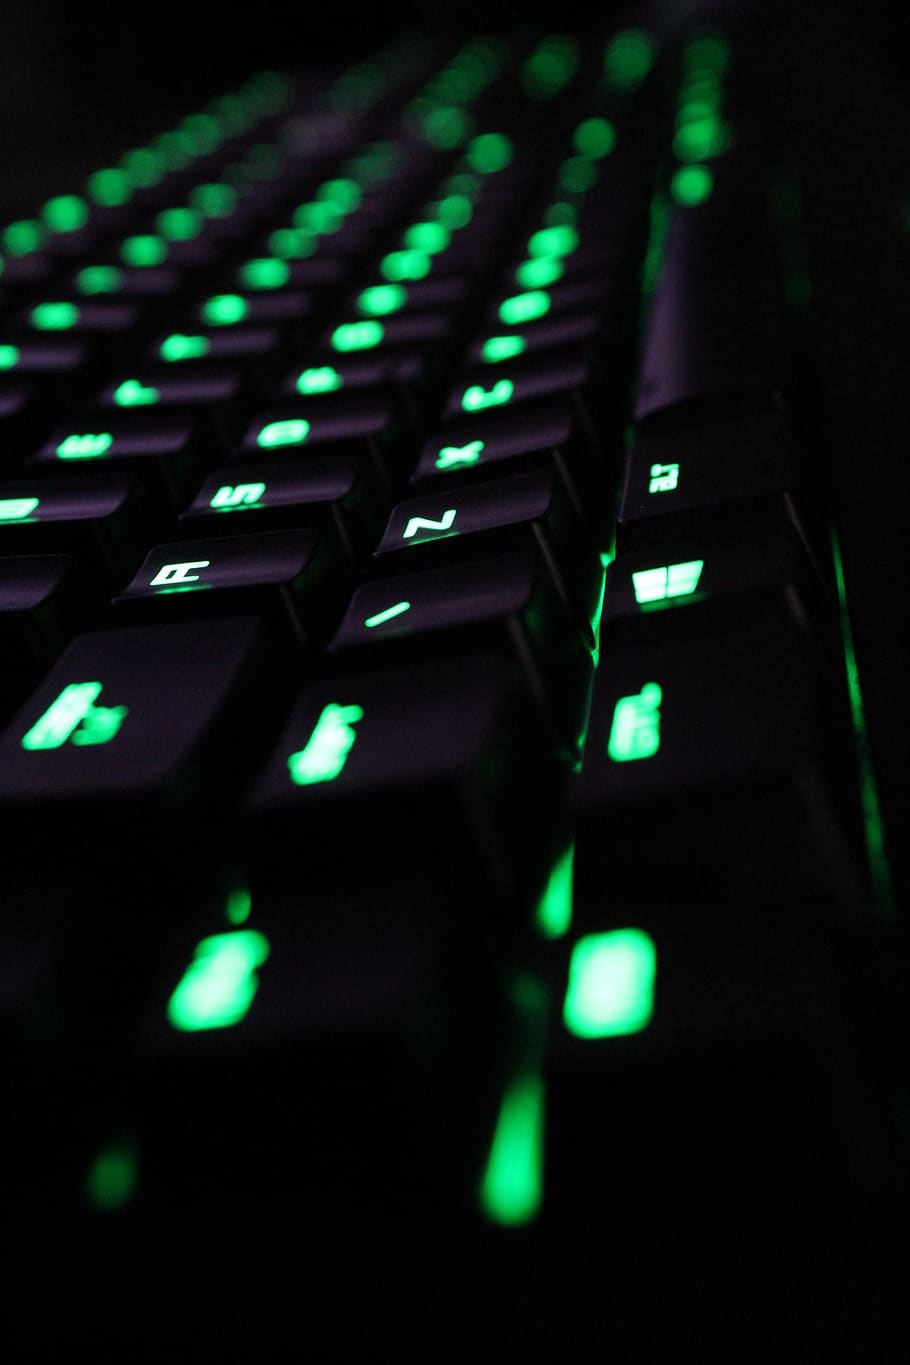 teclado, computador, verde, escuro, tecnologia, equipamento de computador, ninguém, dentro de casa, comunicação, tecnologia sem fio